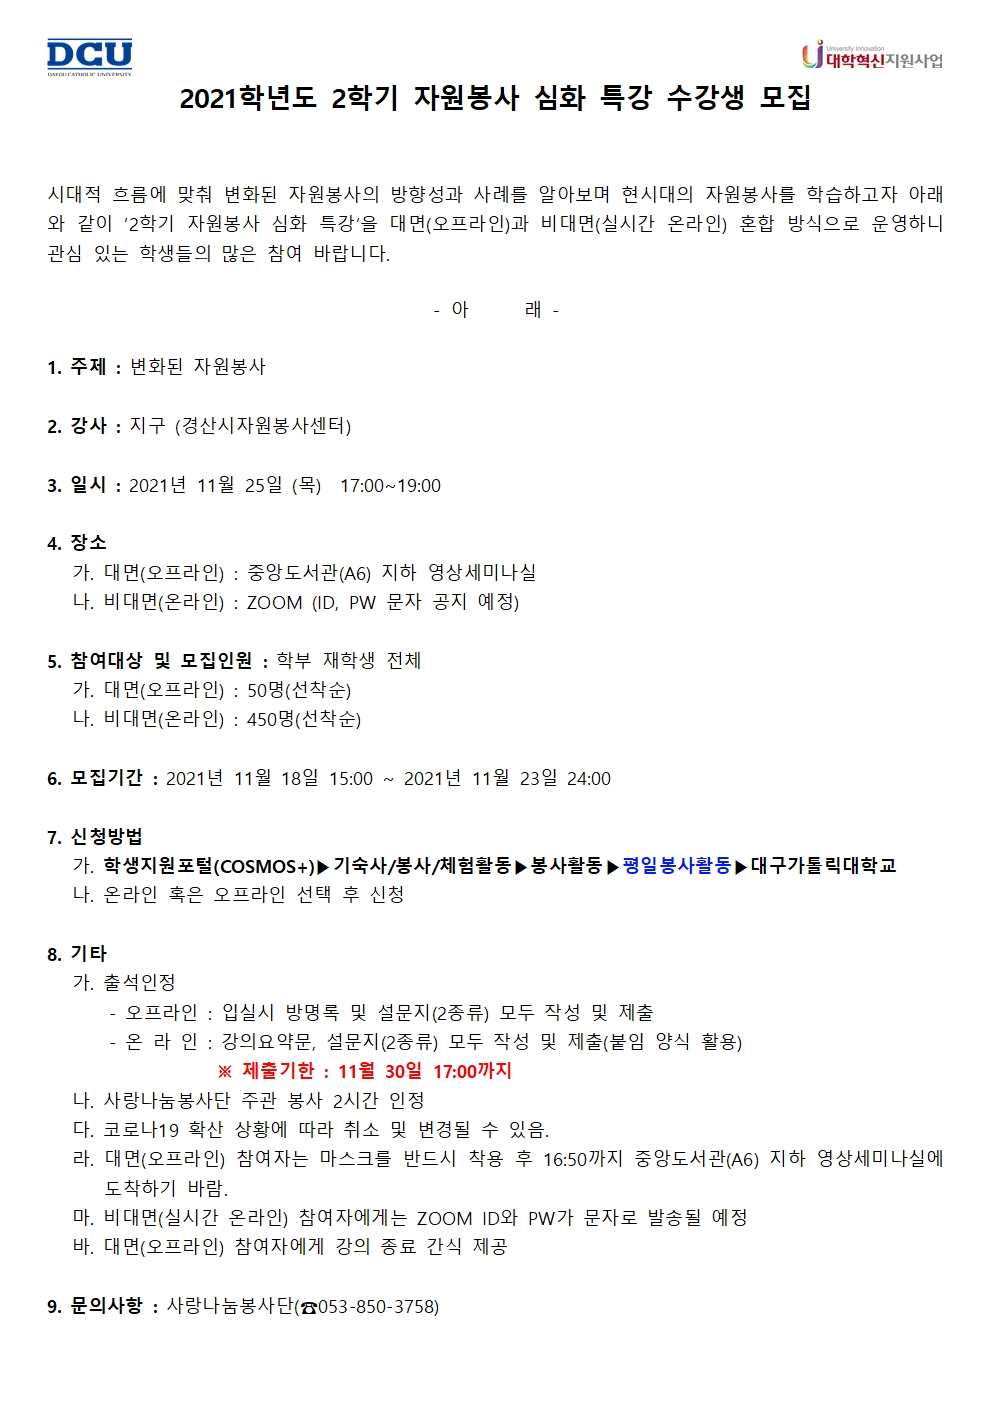 [사랑나눔봉사단 주관 봉사] (대학혁신지원사업) 2021-2 자원봉사 심화 특강 수강생 모집